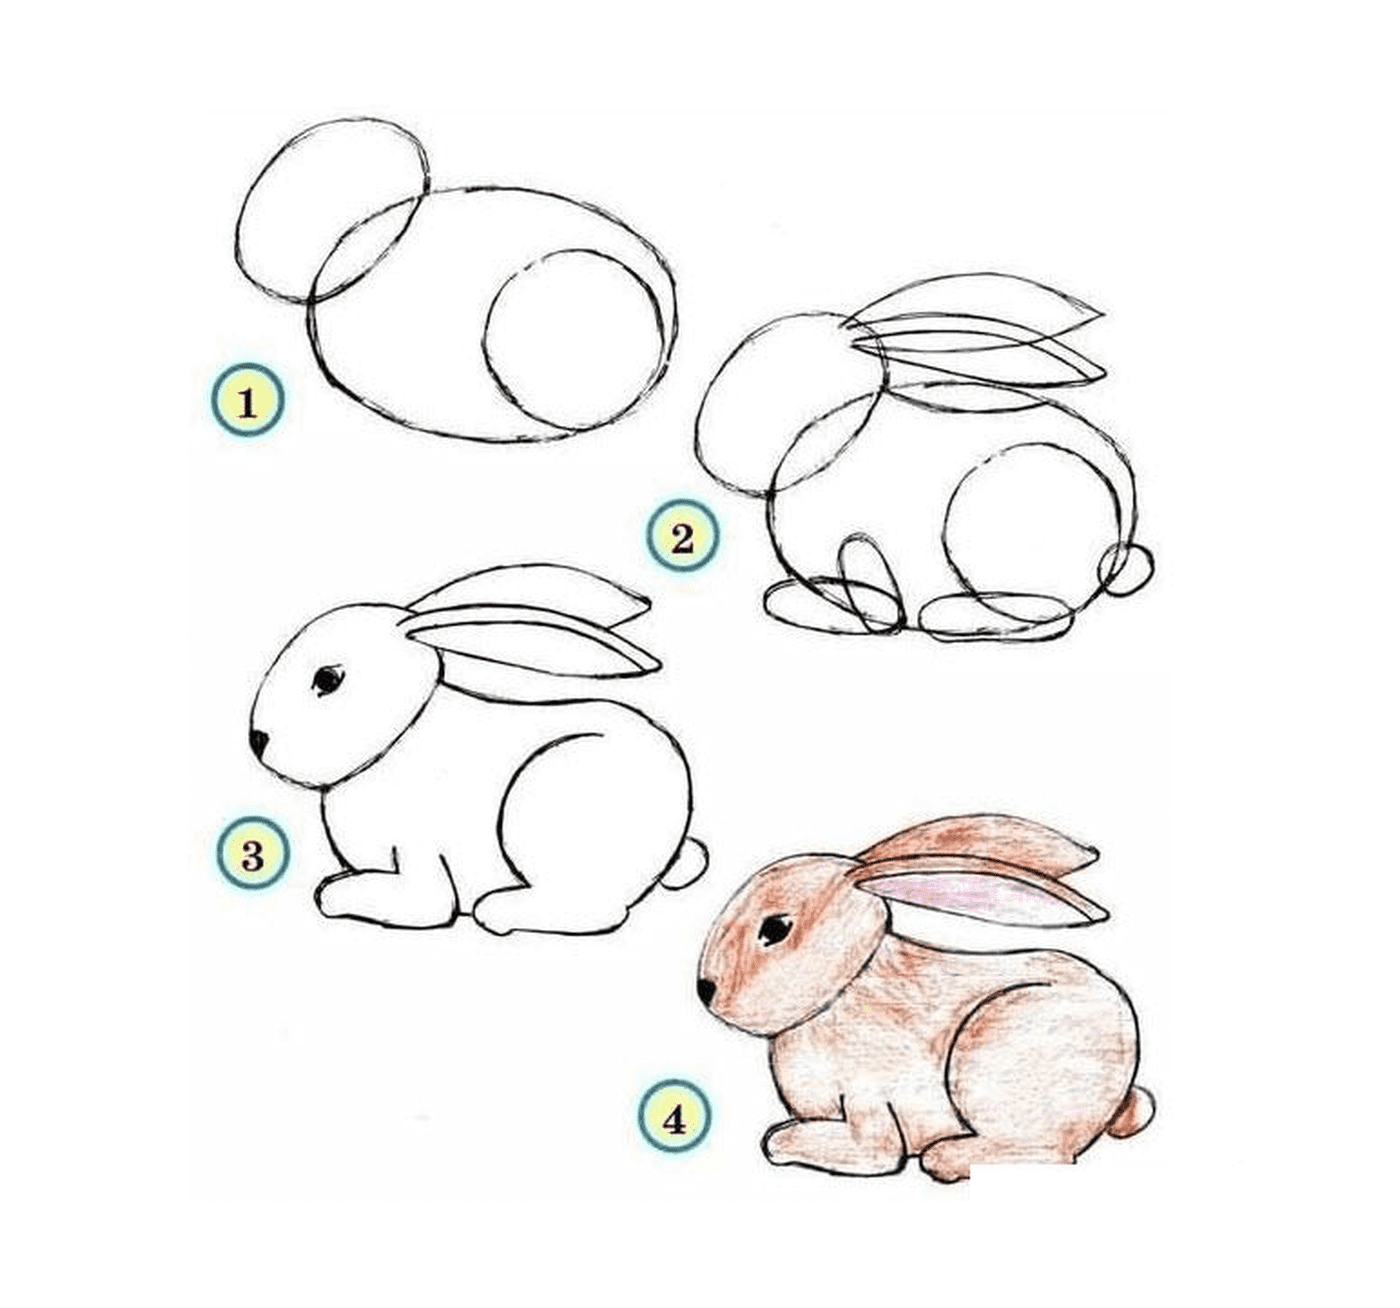  Cómo dibujar un conejo paso a paso 